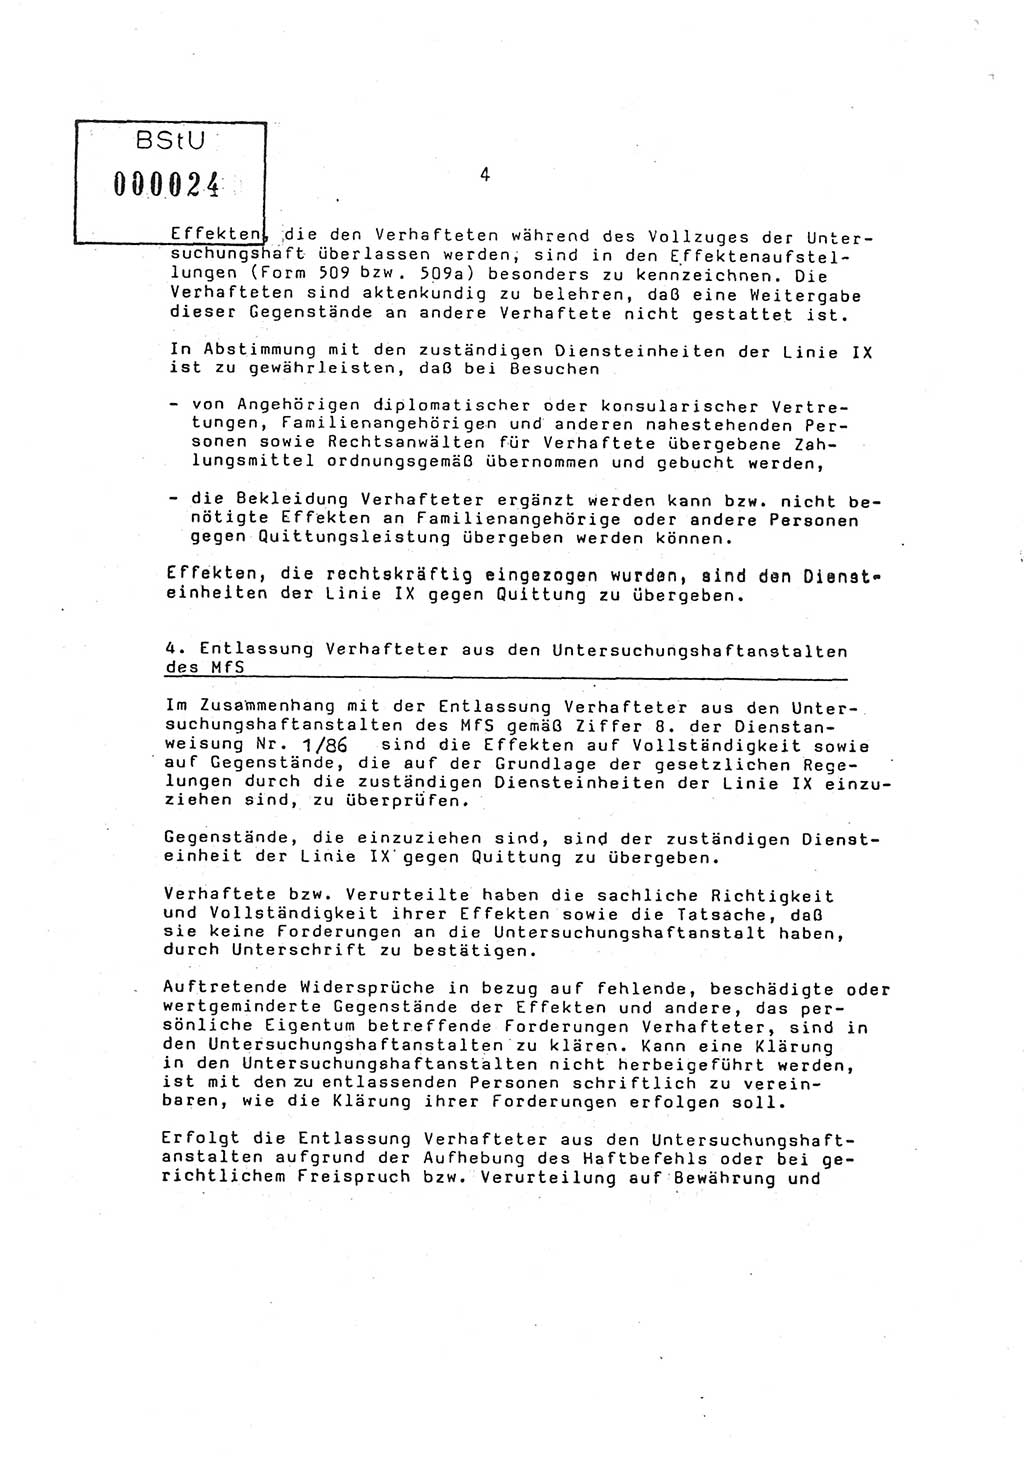 Ordnung Nr. 3/86 über den Umgang mit den Effekten Verhafteter (Effektenordnung) in den Untersuchungshaftanstalten (UHA) des MfS (Ministerium für Staatssicherheit) [Deutsche Demokratische Republik (DDR)], Abteilung ⅩⅣ, Leiter, Vertrauliche Verschlußsache (VVS) o008-16/86, Berlin, 29.1.1986, Seite 4 (Ordn. 3/86 UHA MfS DDR Abt. ⅩⅣ VVS o008-16/86 1986, S. 4)